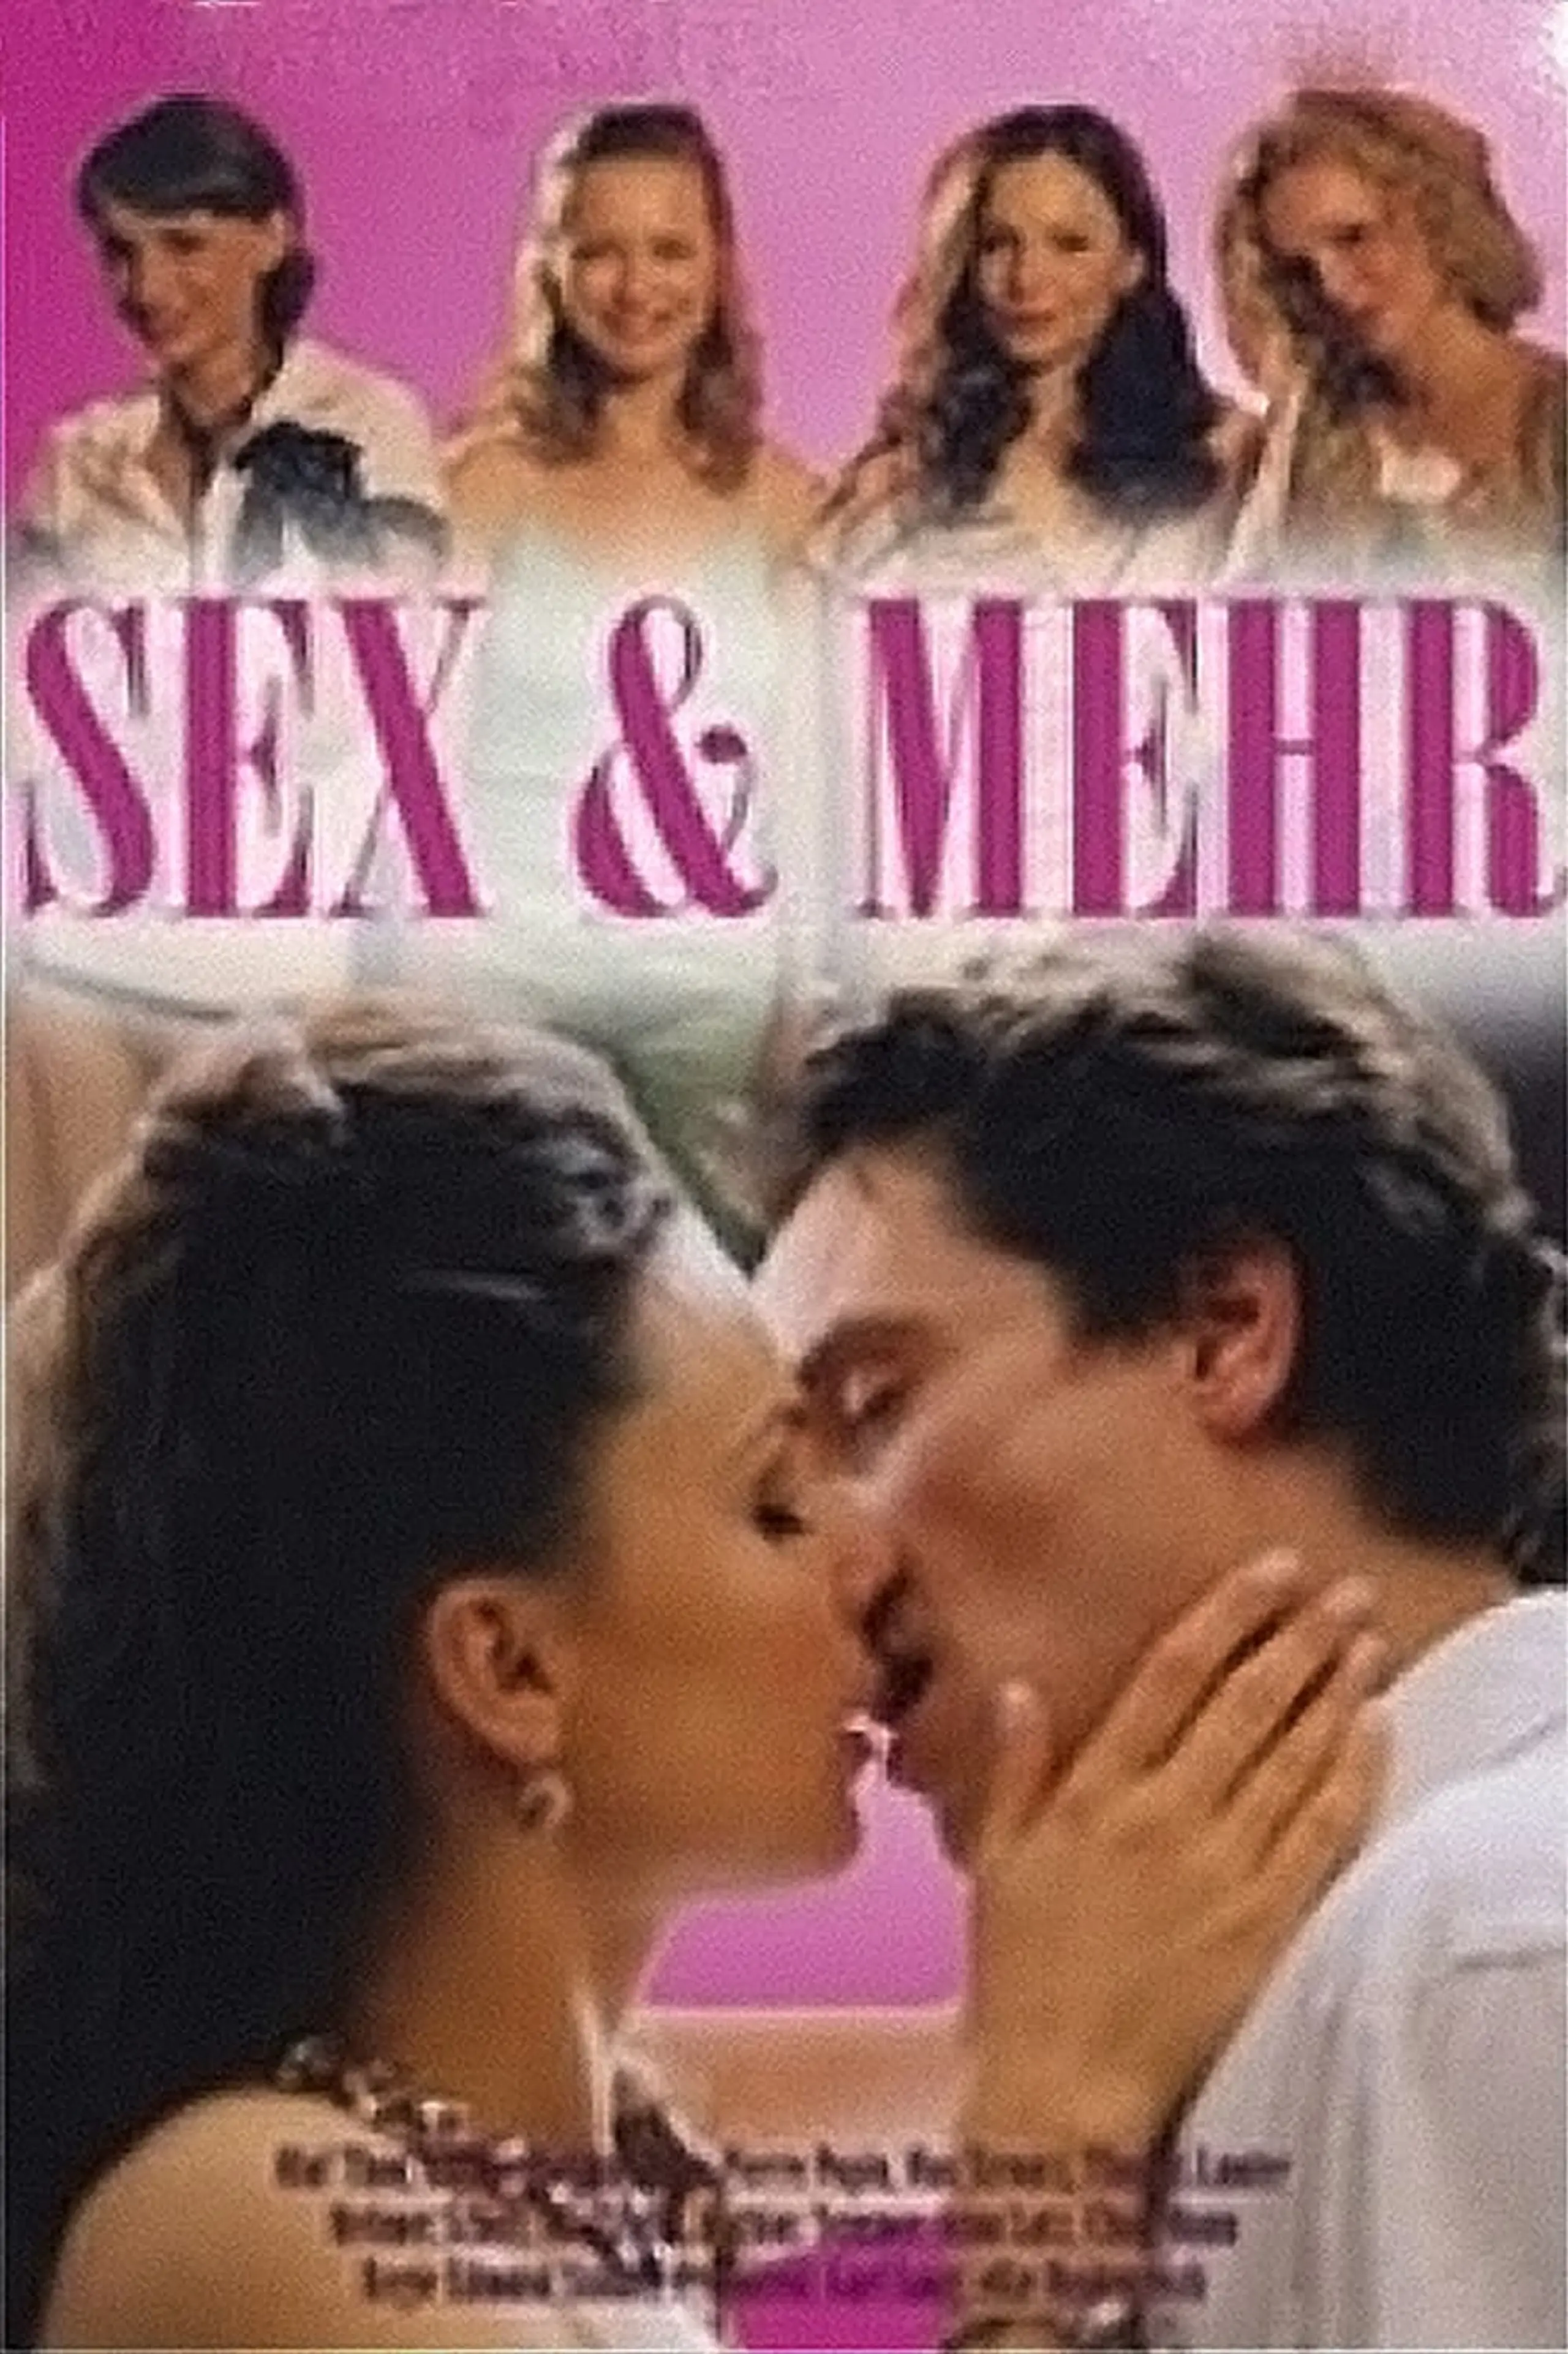 Sex & mehr